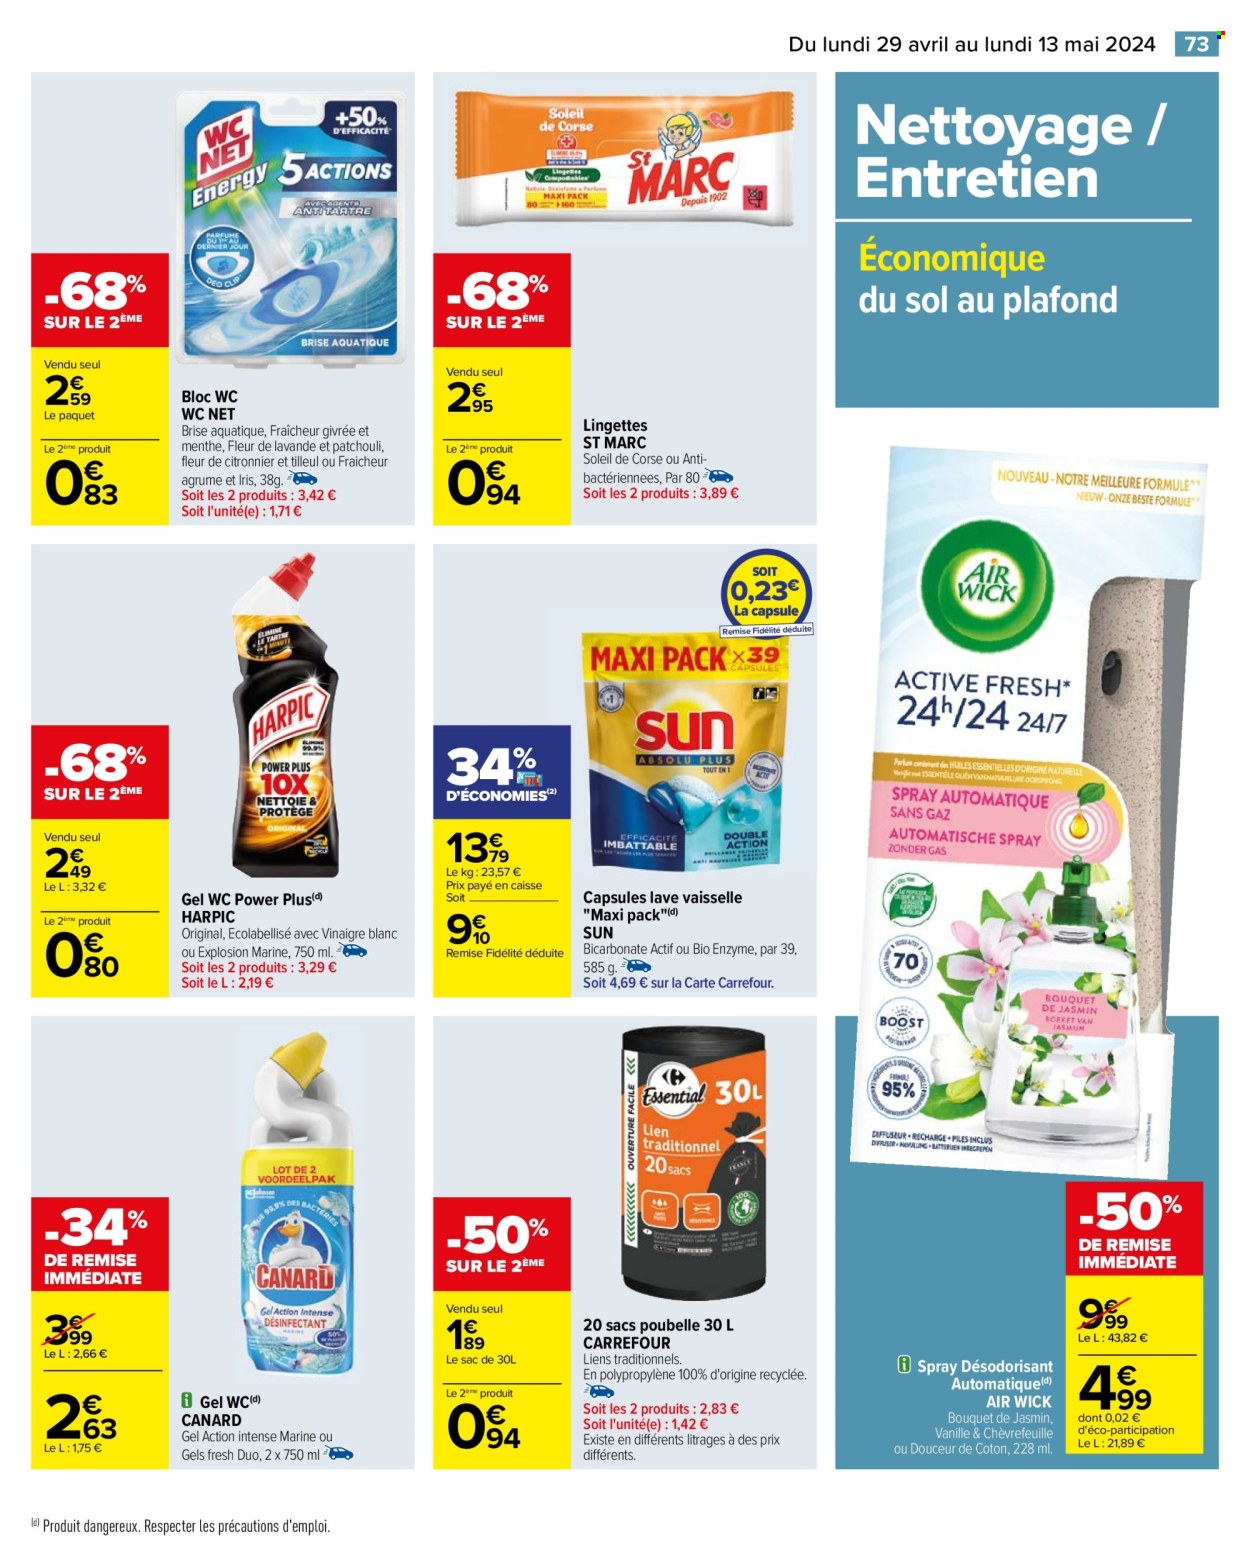 thumbnail - Catalogue Carrefour Hypermarchés - 29/04/2024 - 13/05/2024 - Produits soldés - WC net, bloc nettoyant WC, lingettes, desodorisant, Air Wick, nettoyant gel WC, tablettes lave-vaisselle, sacs poubelles. Page 77.